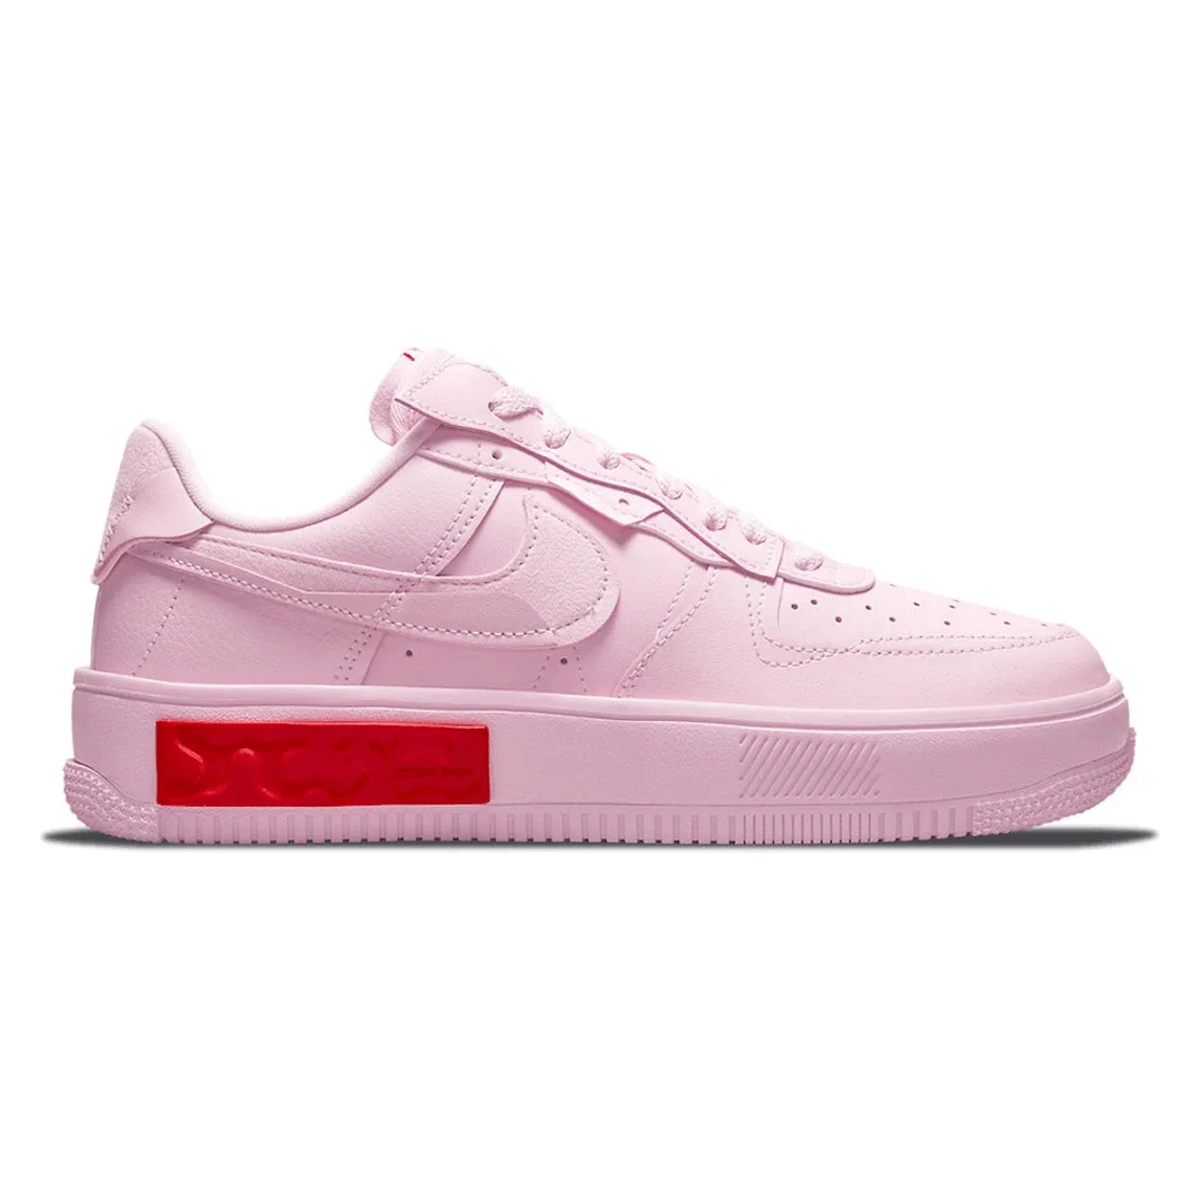 Nike Air Force 1 Fontanka "Foam Pink"